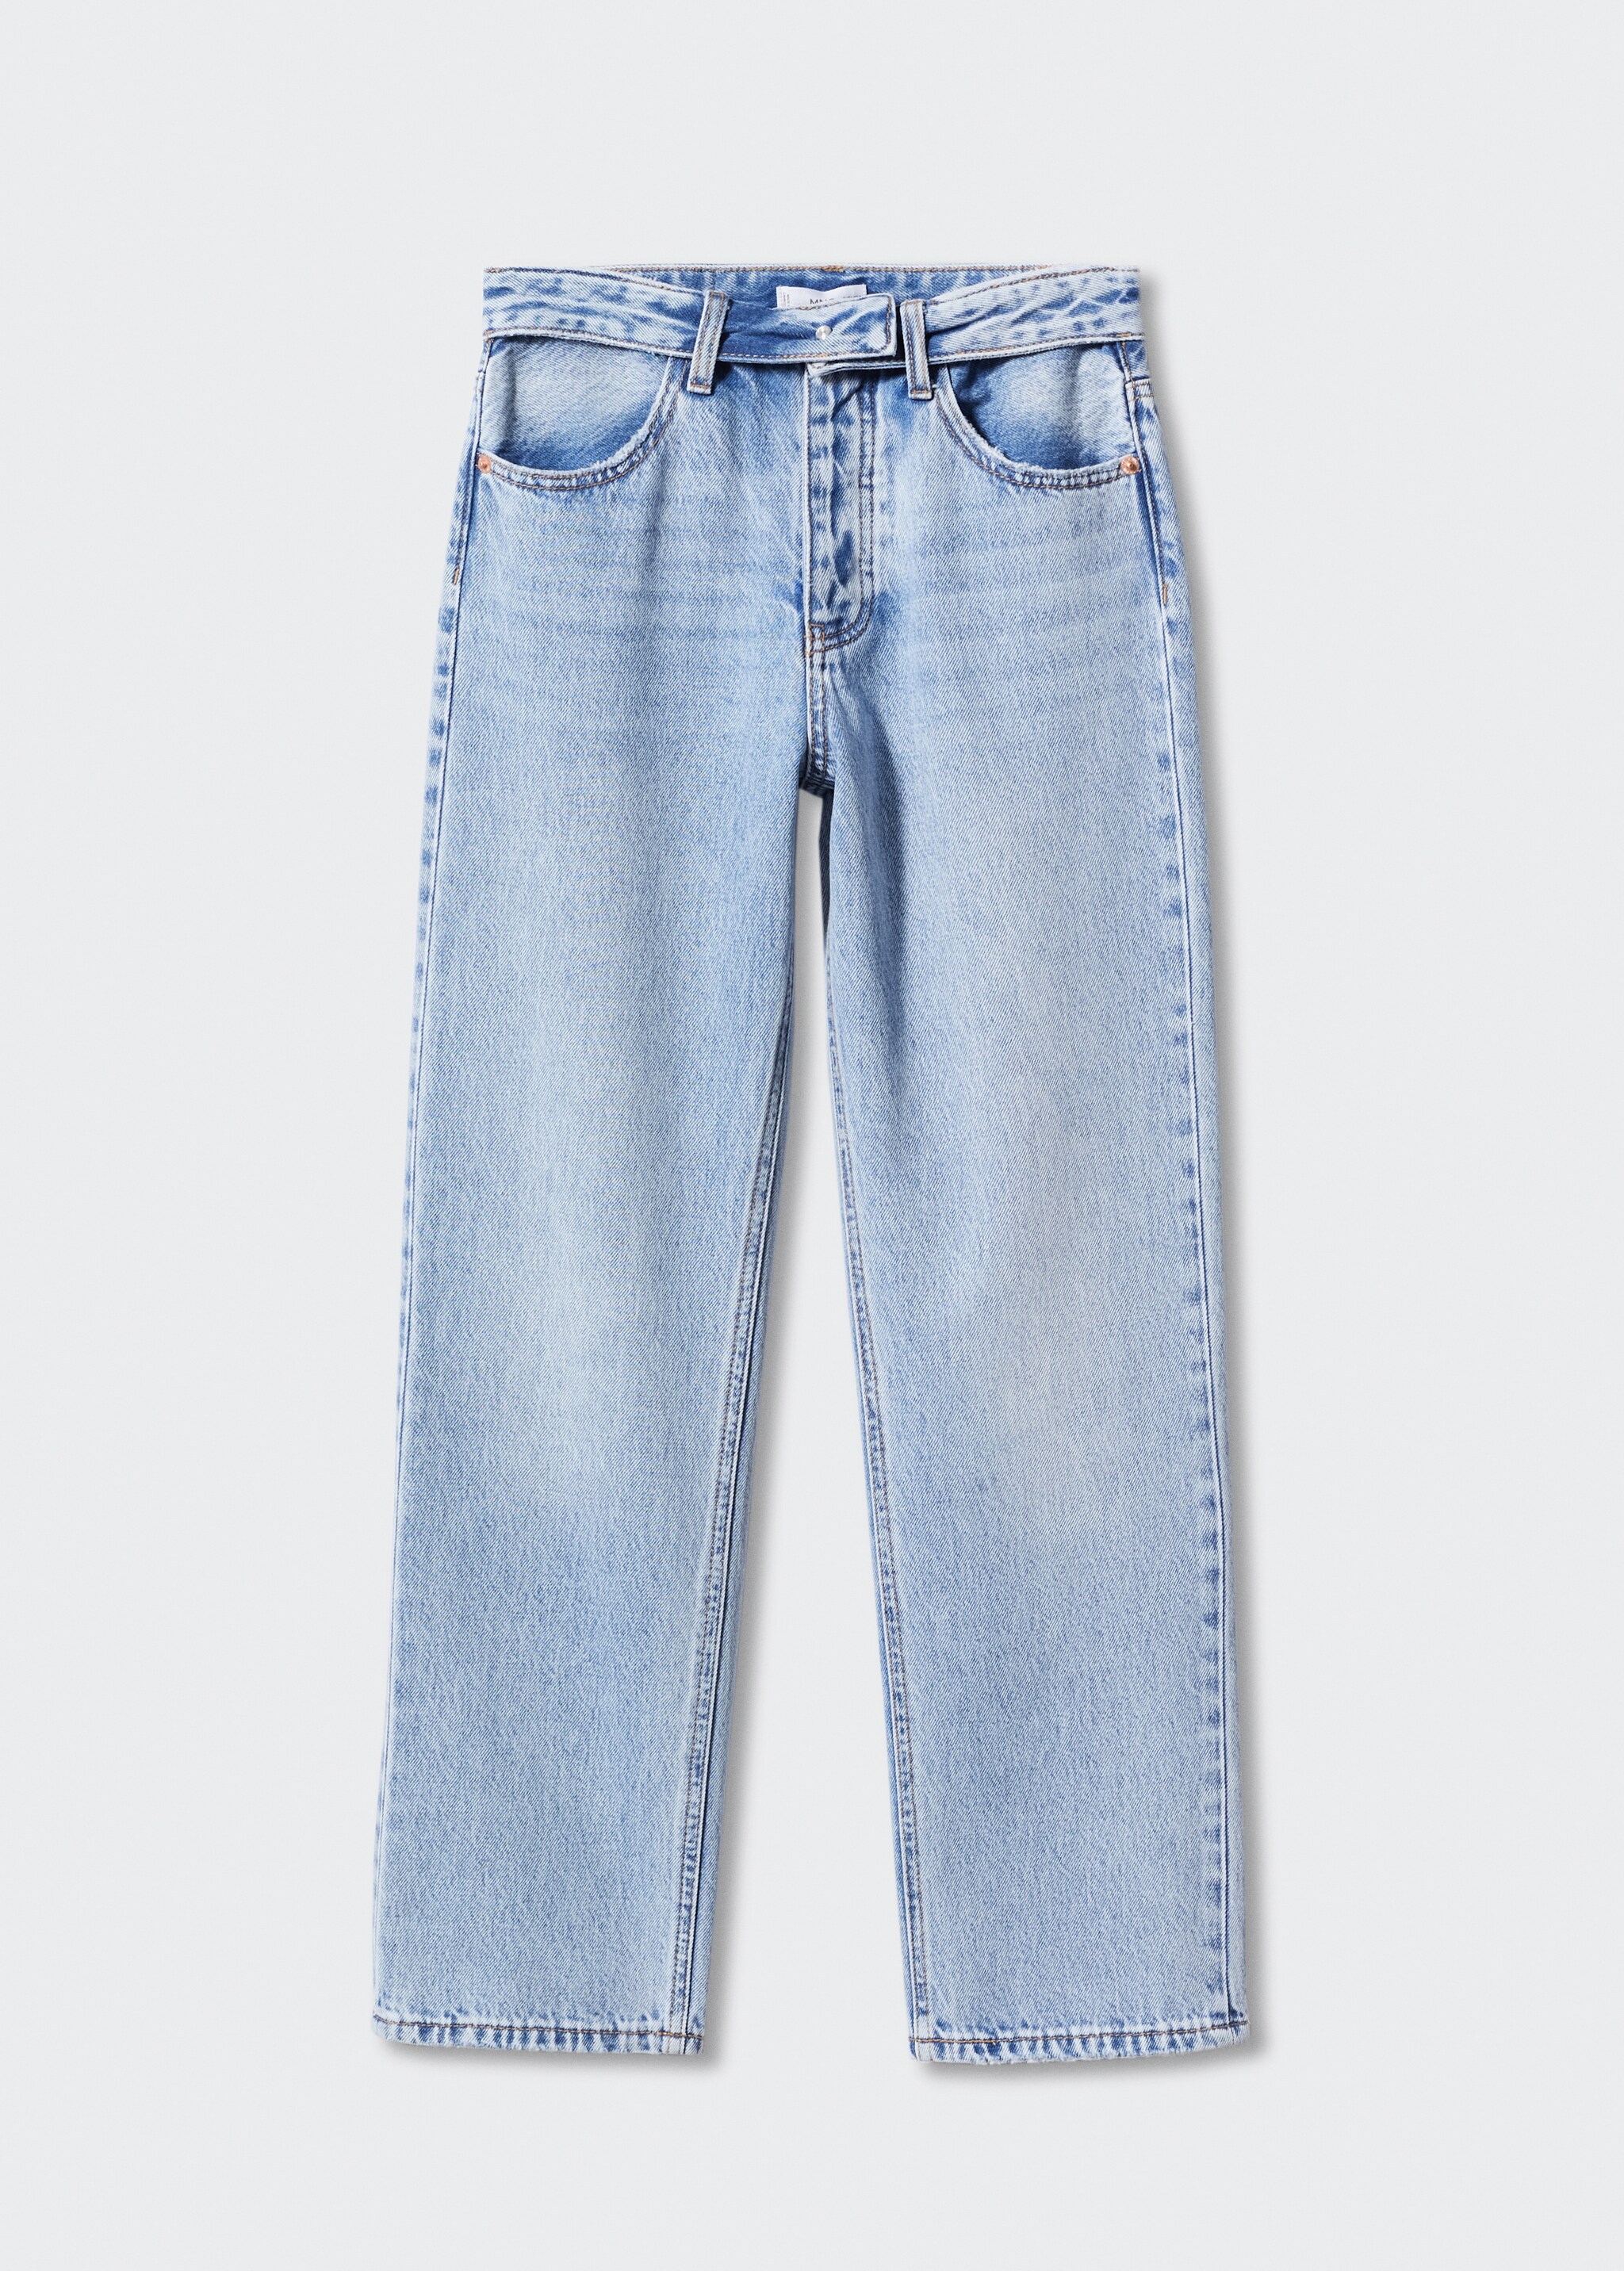 Jeans cintura vuelta - Artículo sin modelo